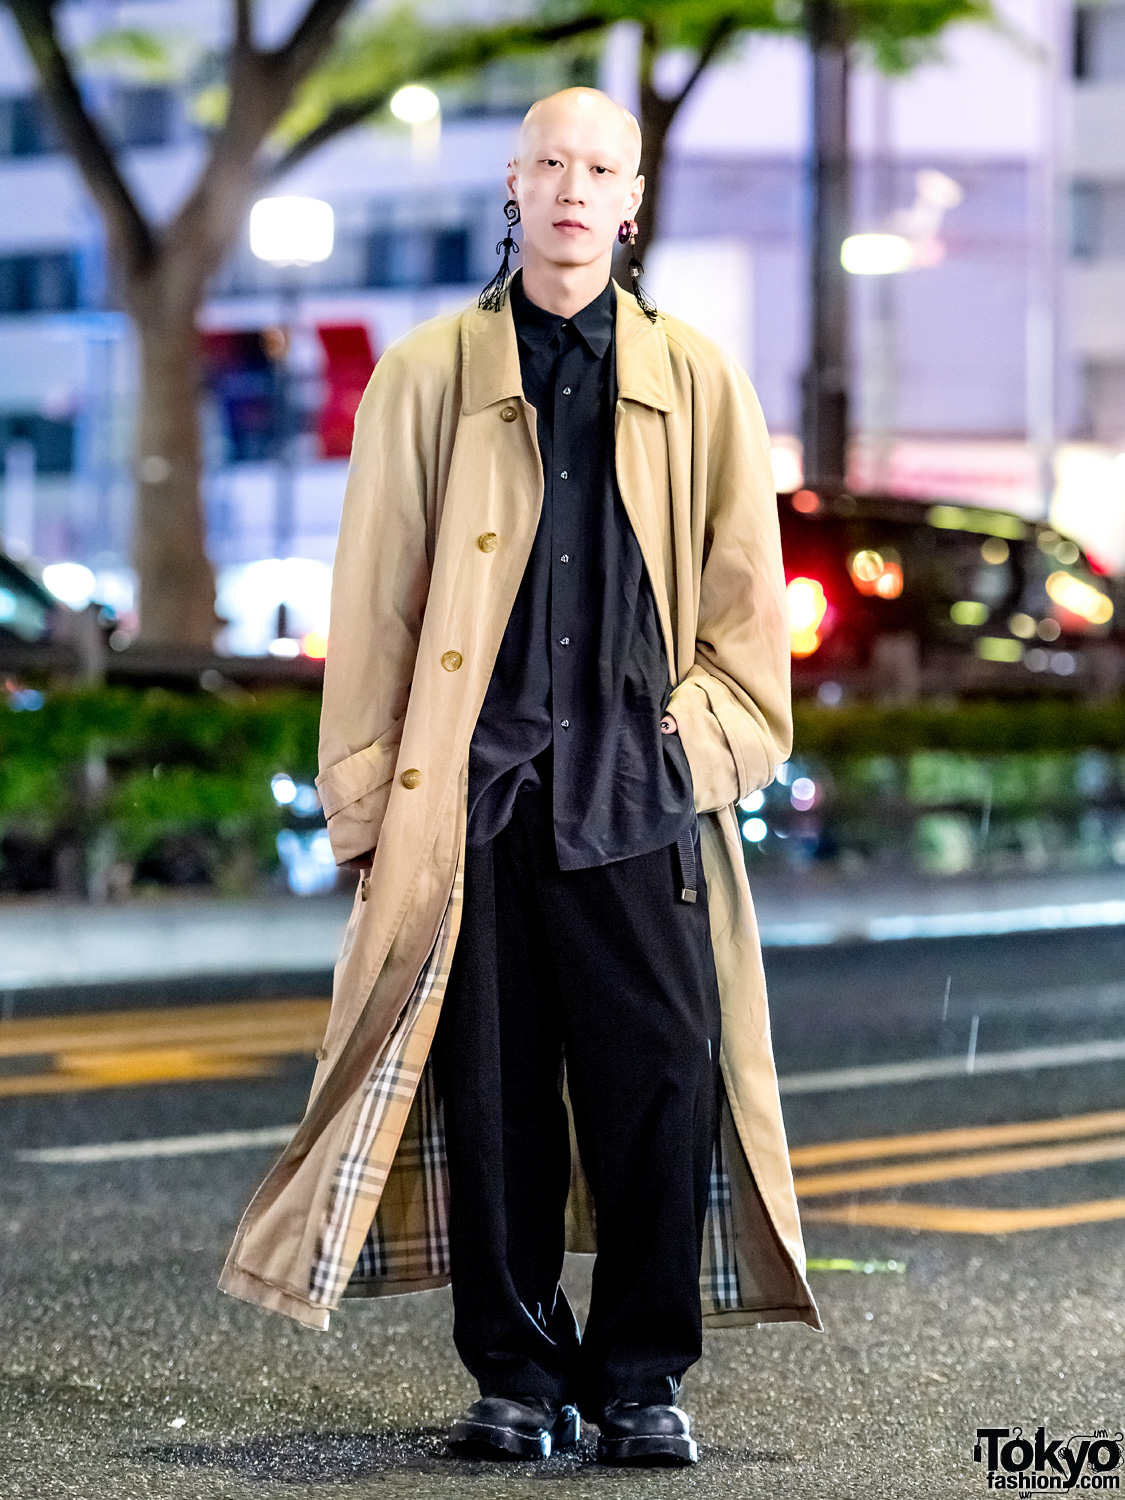 Harajuku Musician & Model in Minimalist Streetwear Style w/ Burberry Coat, Y's Shirt, Dr. Martens Shoes & Statement Tassel Earrings